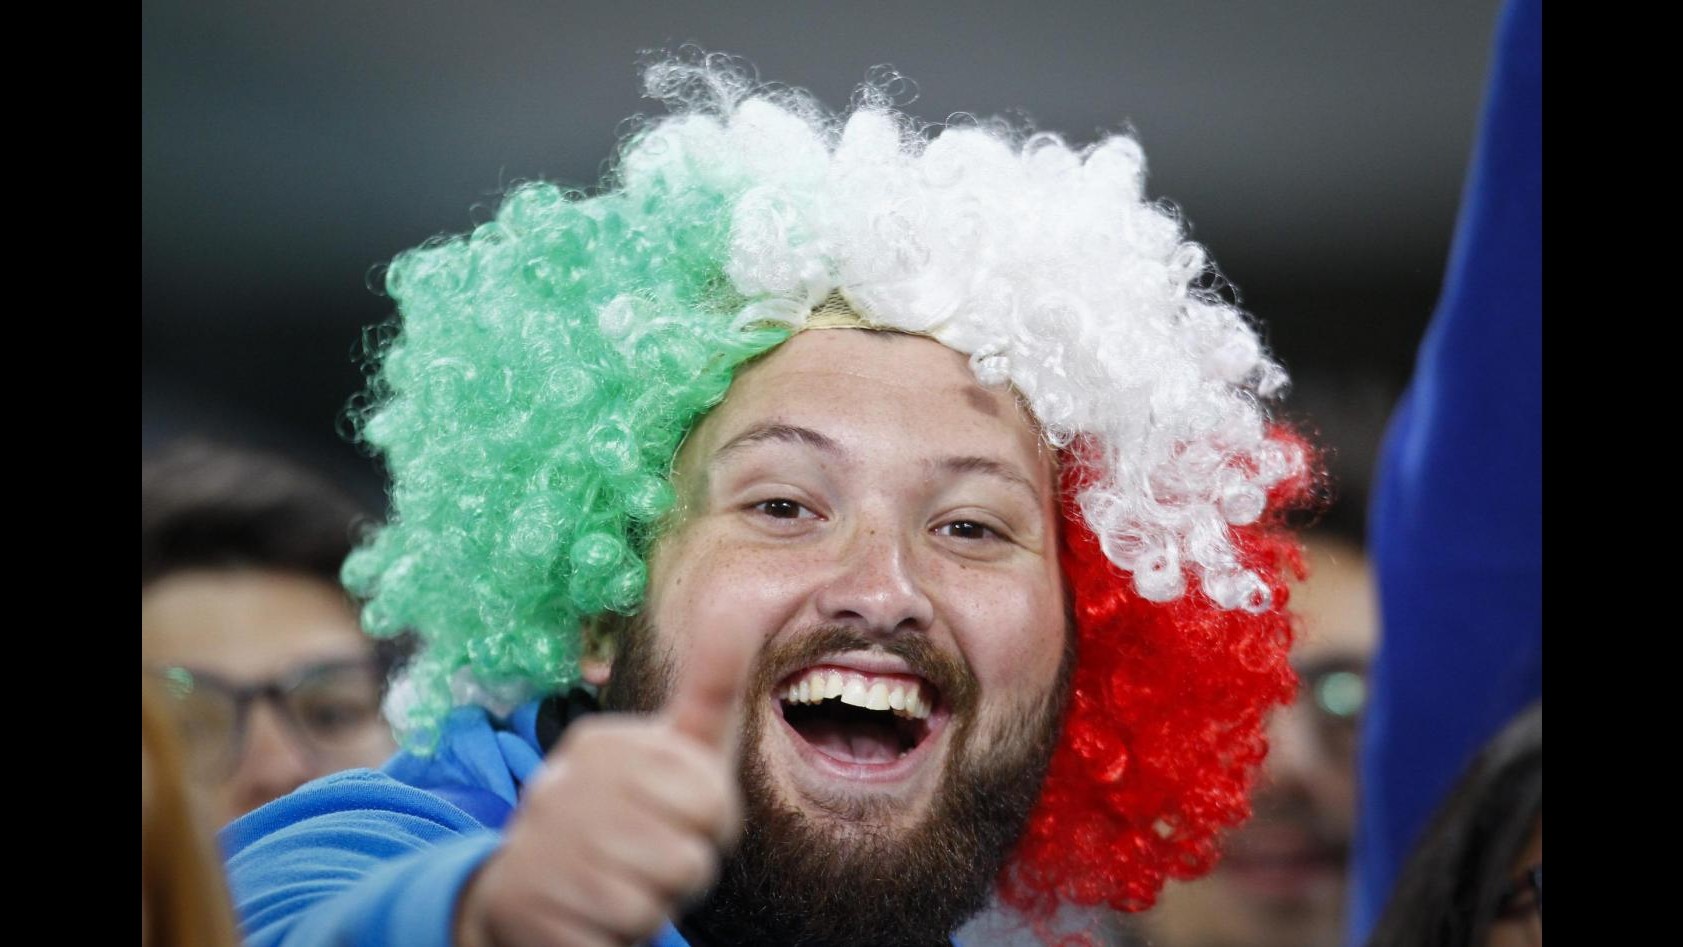 FOTO Italia-Spagna 1-1: De Rossi su rigore salva gli Azzurri